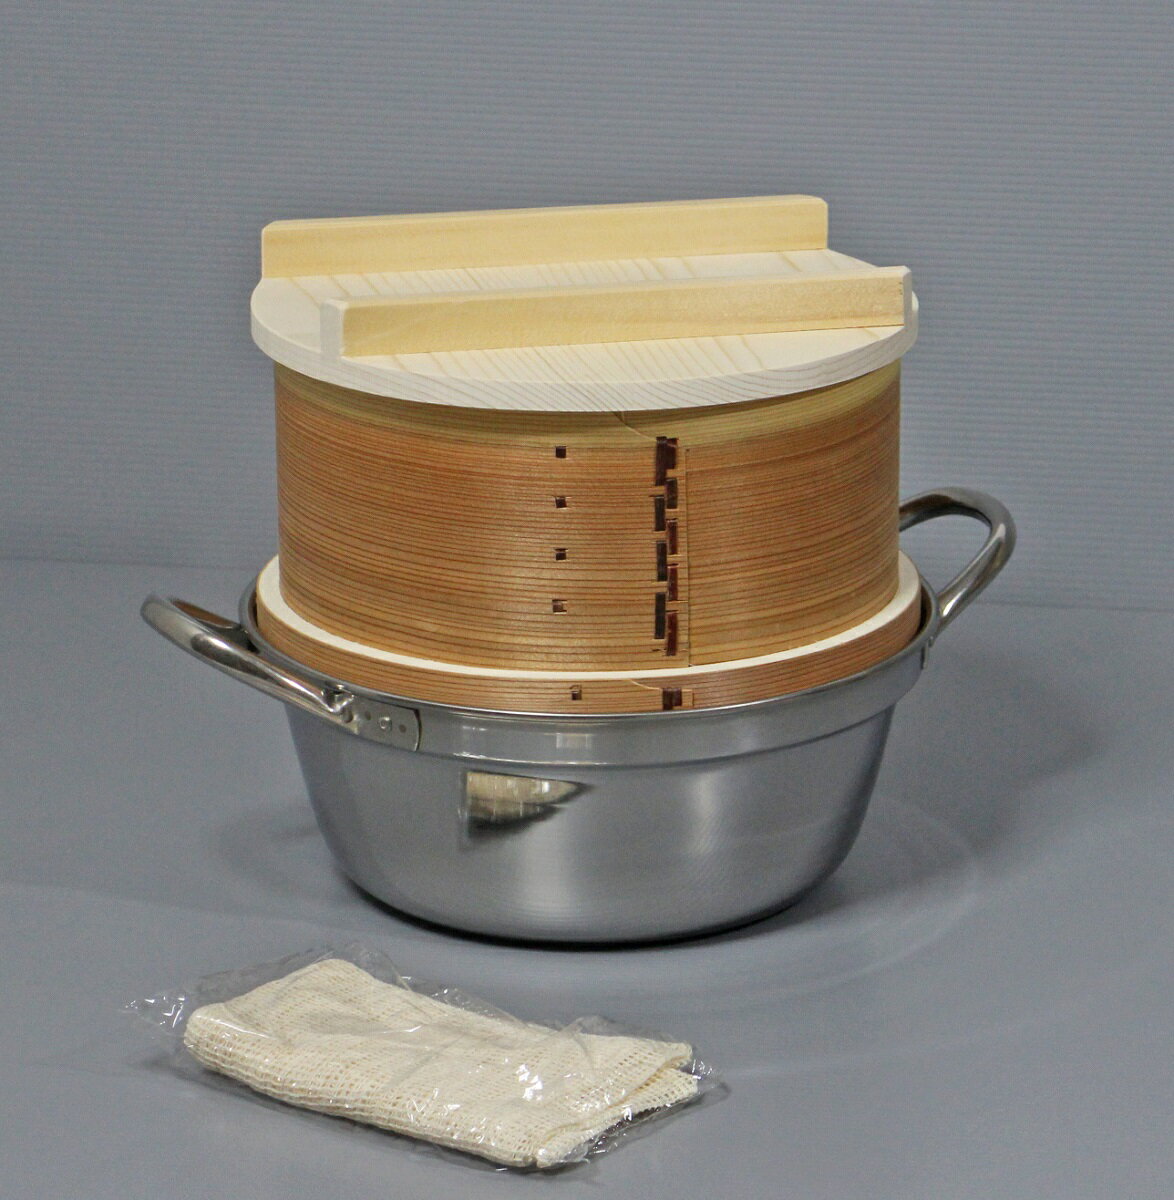 和せいろ 鍋付セット 2升用 セイロ 蒸し器 蒸籠 鍋付き セット